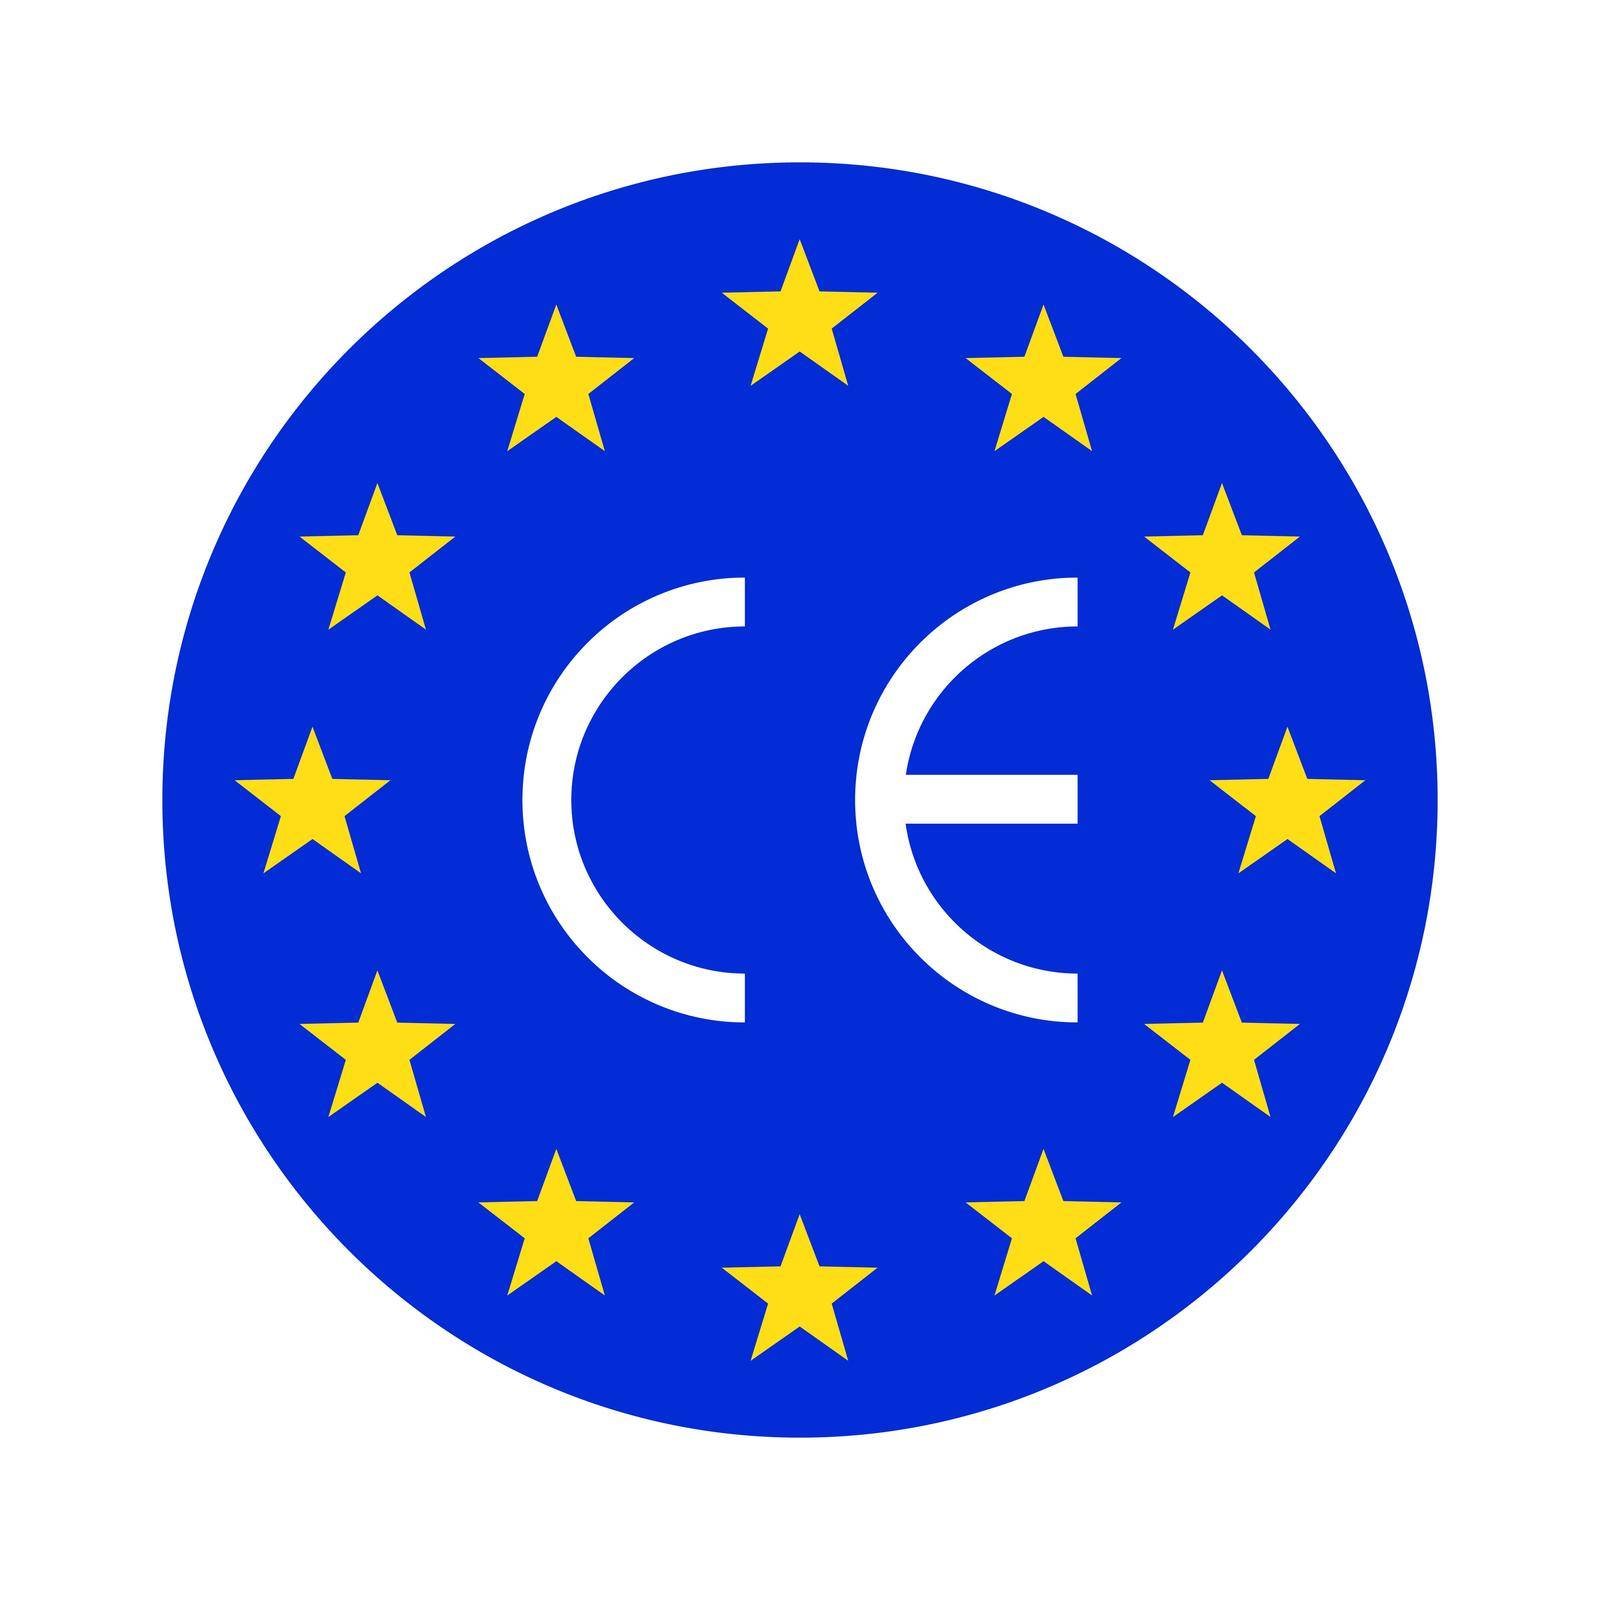 EU-CE marking